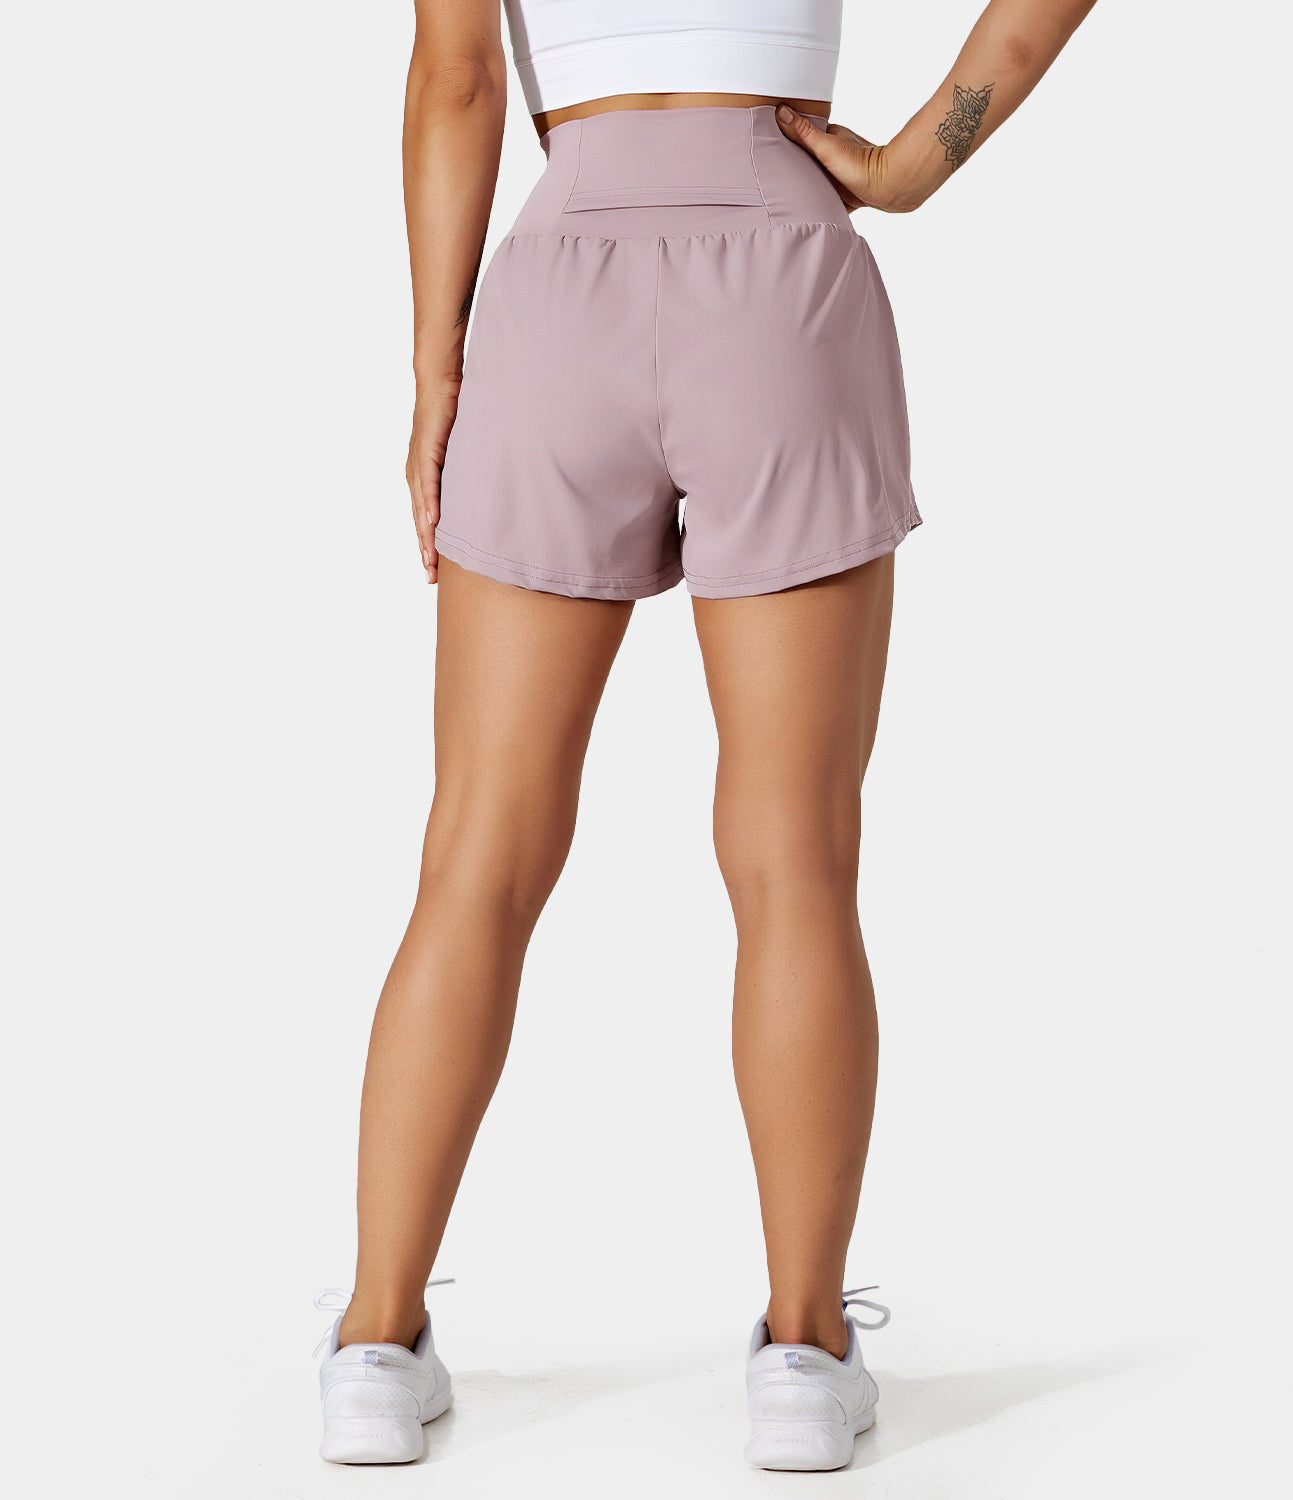 

Halara Super High Waisted Back Pocket & Side Hidden Pocket 2-in-1 Yoga Shorts 2.5" Gym Short - Lunar Rock -  booty shorts compression shorts